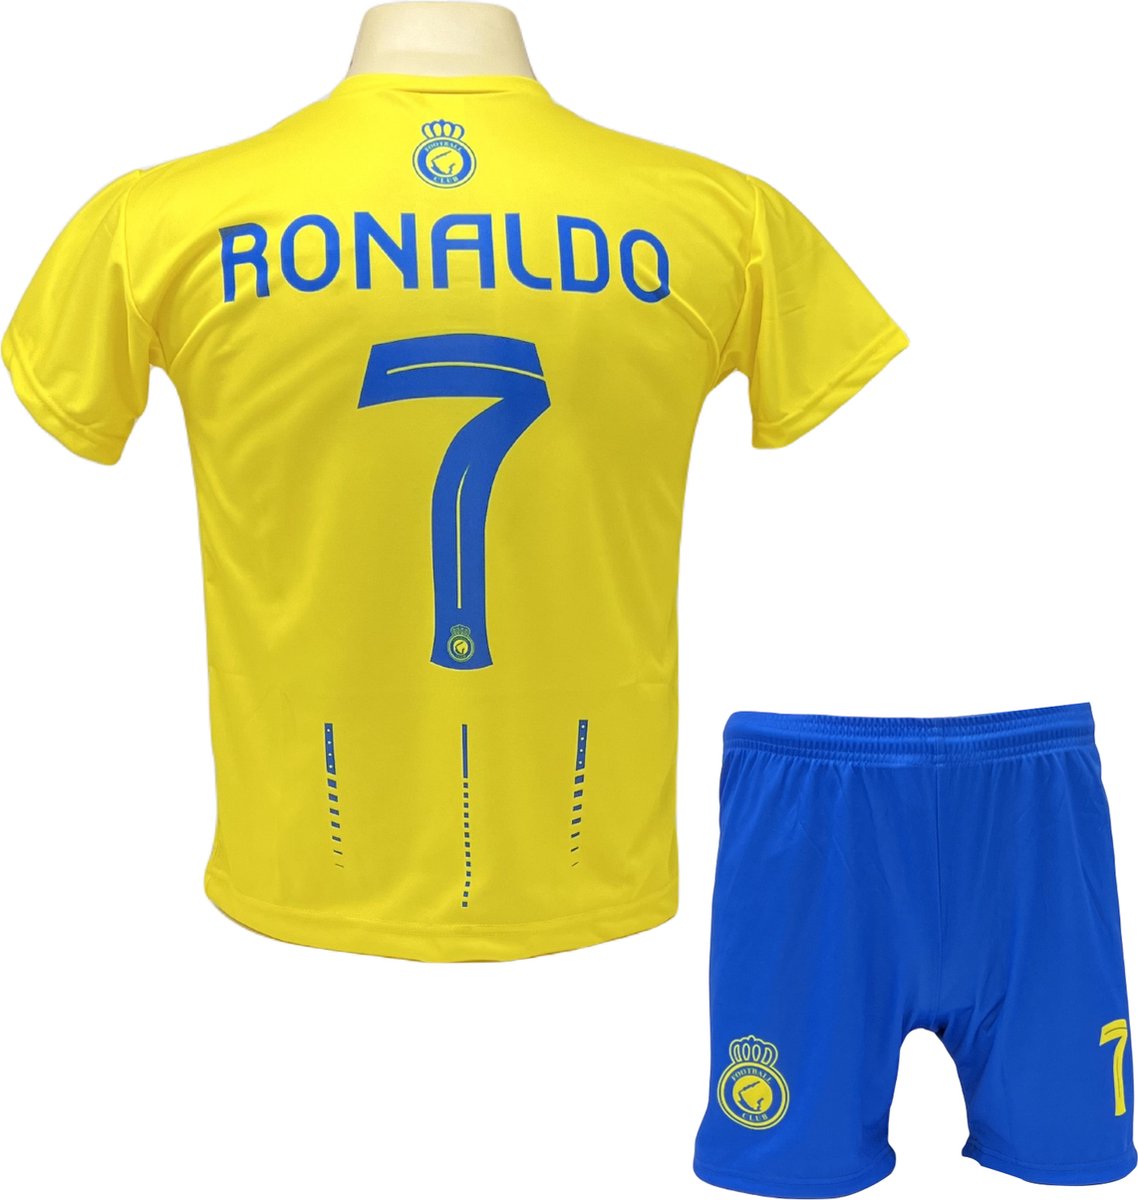 Ronaldo Al Nassr Voetbalshirt en Broekje Voetbaltenue - Maat S (164)